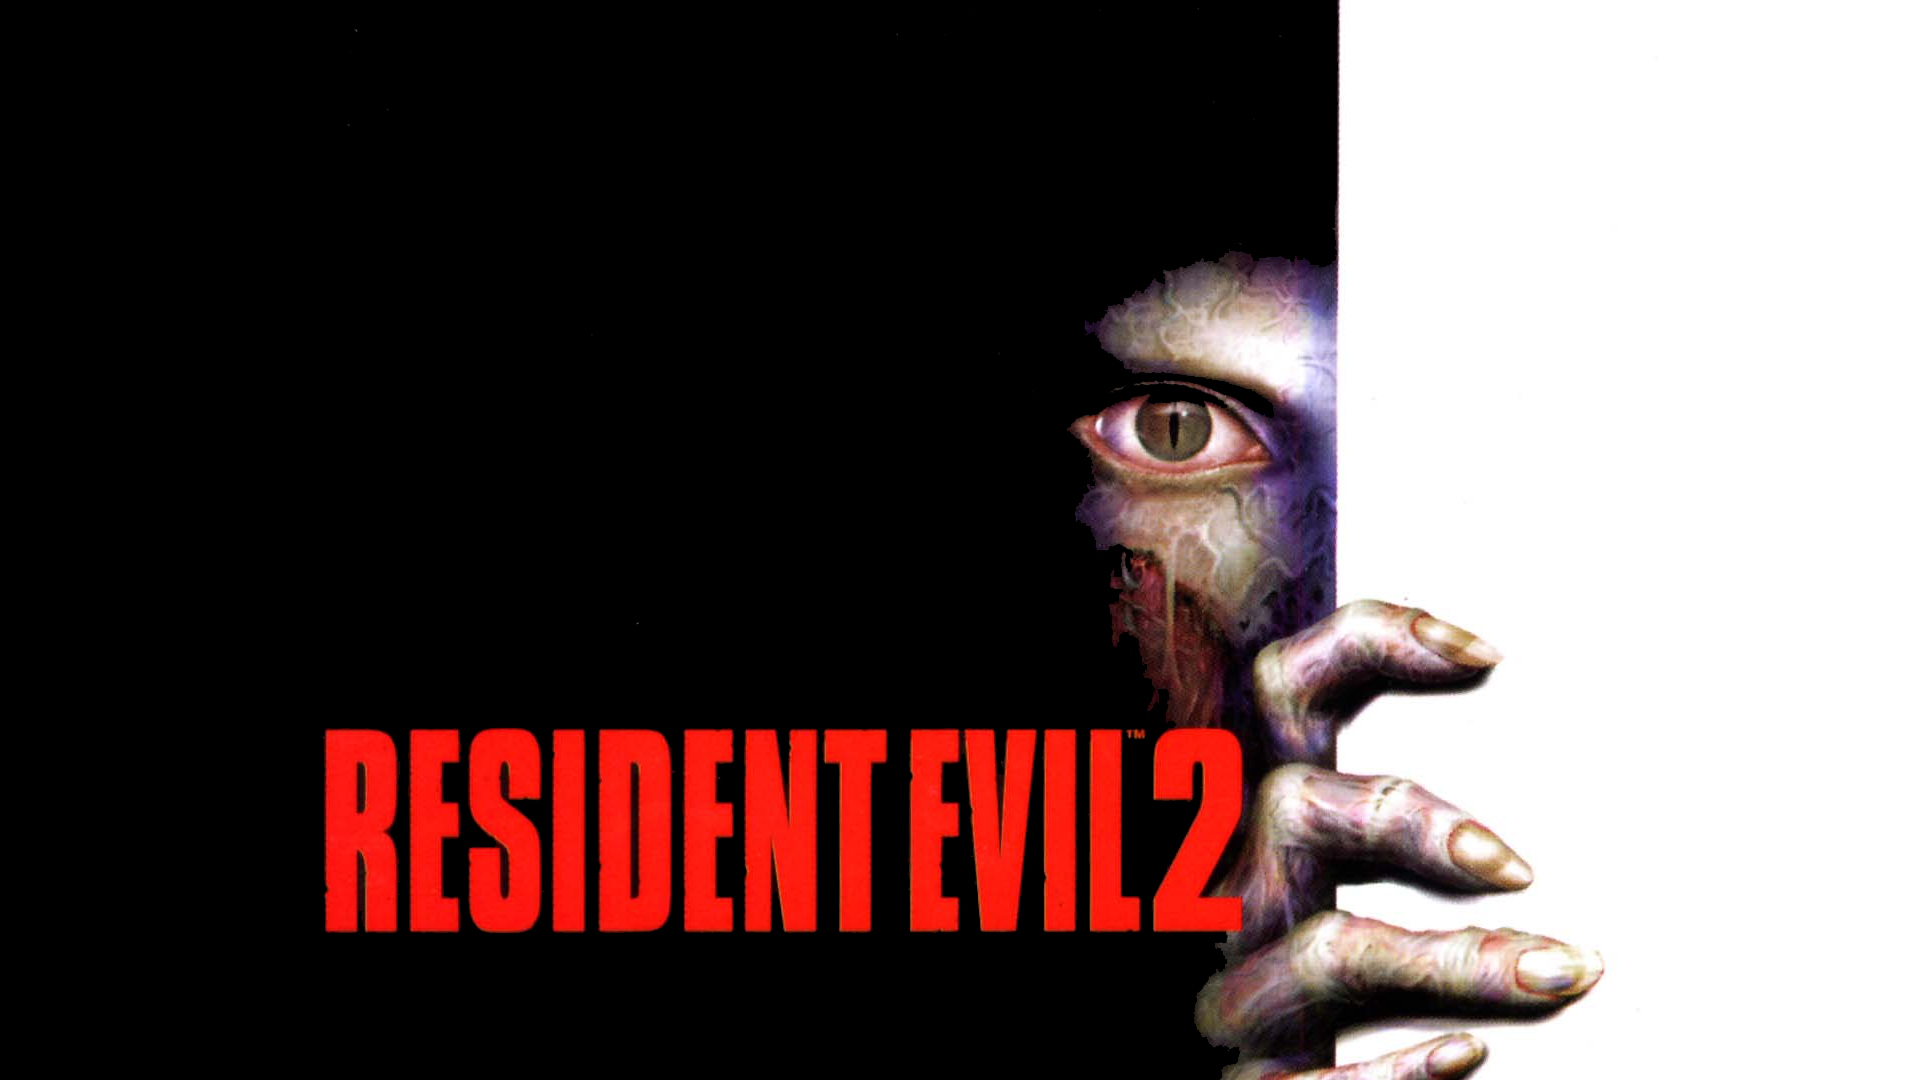 1001 Videojuegos que debes jugar: Resident Evil 2 5